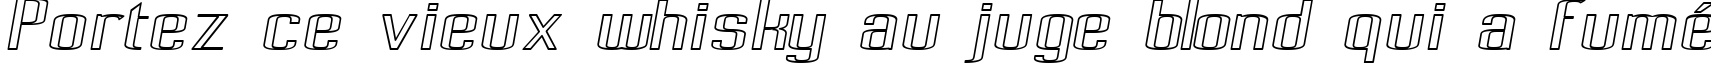 Пример написания шрифтом Pecot Outline Oblique текста на французском